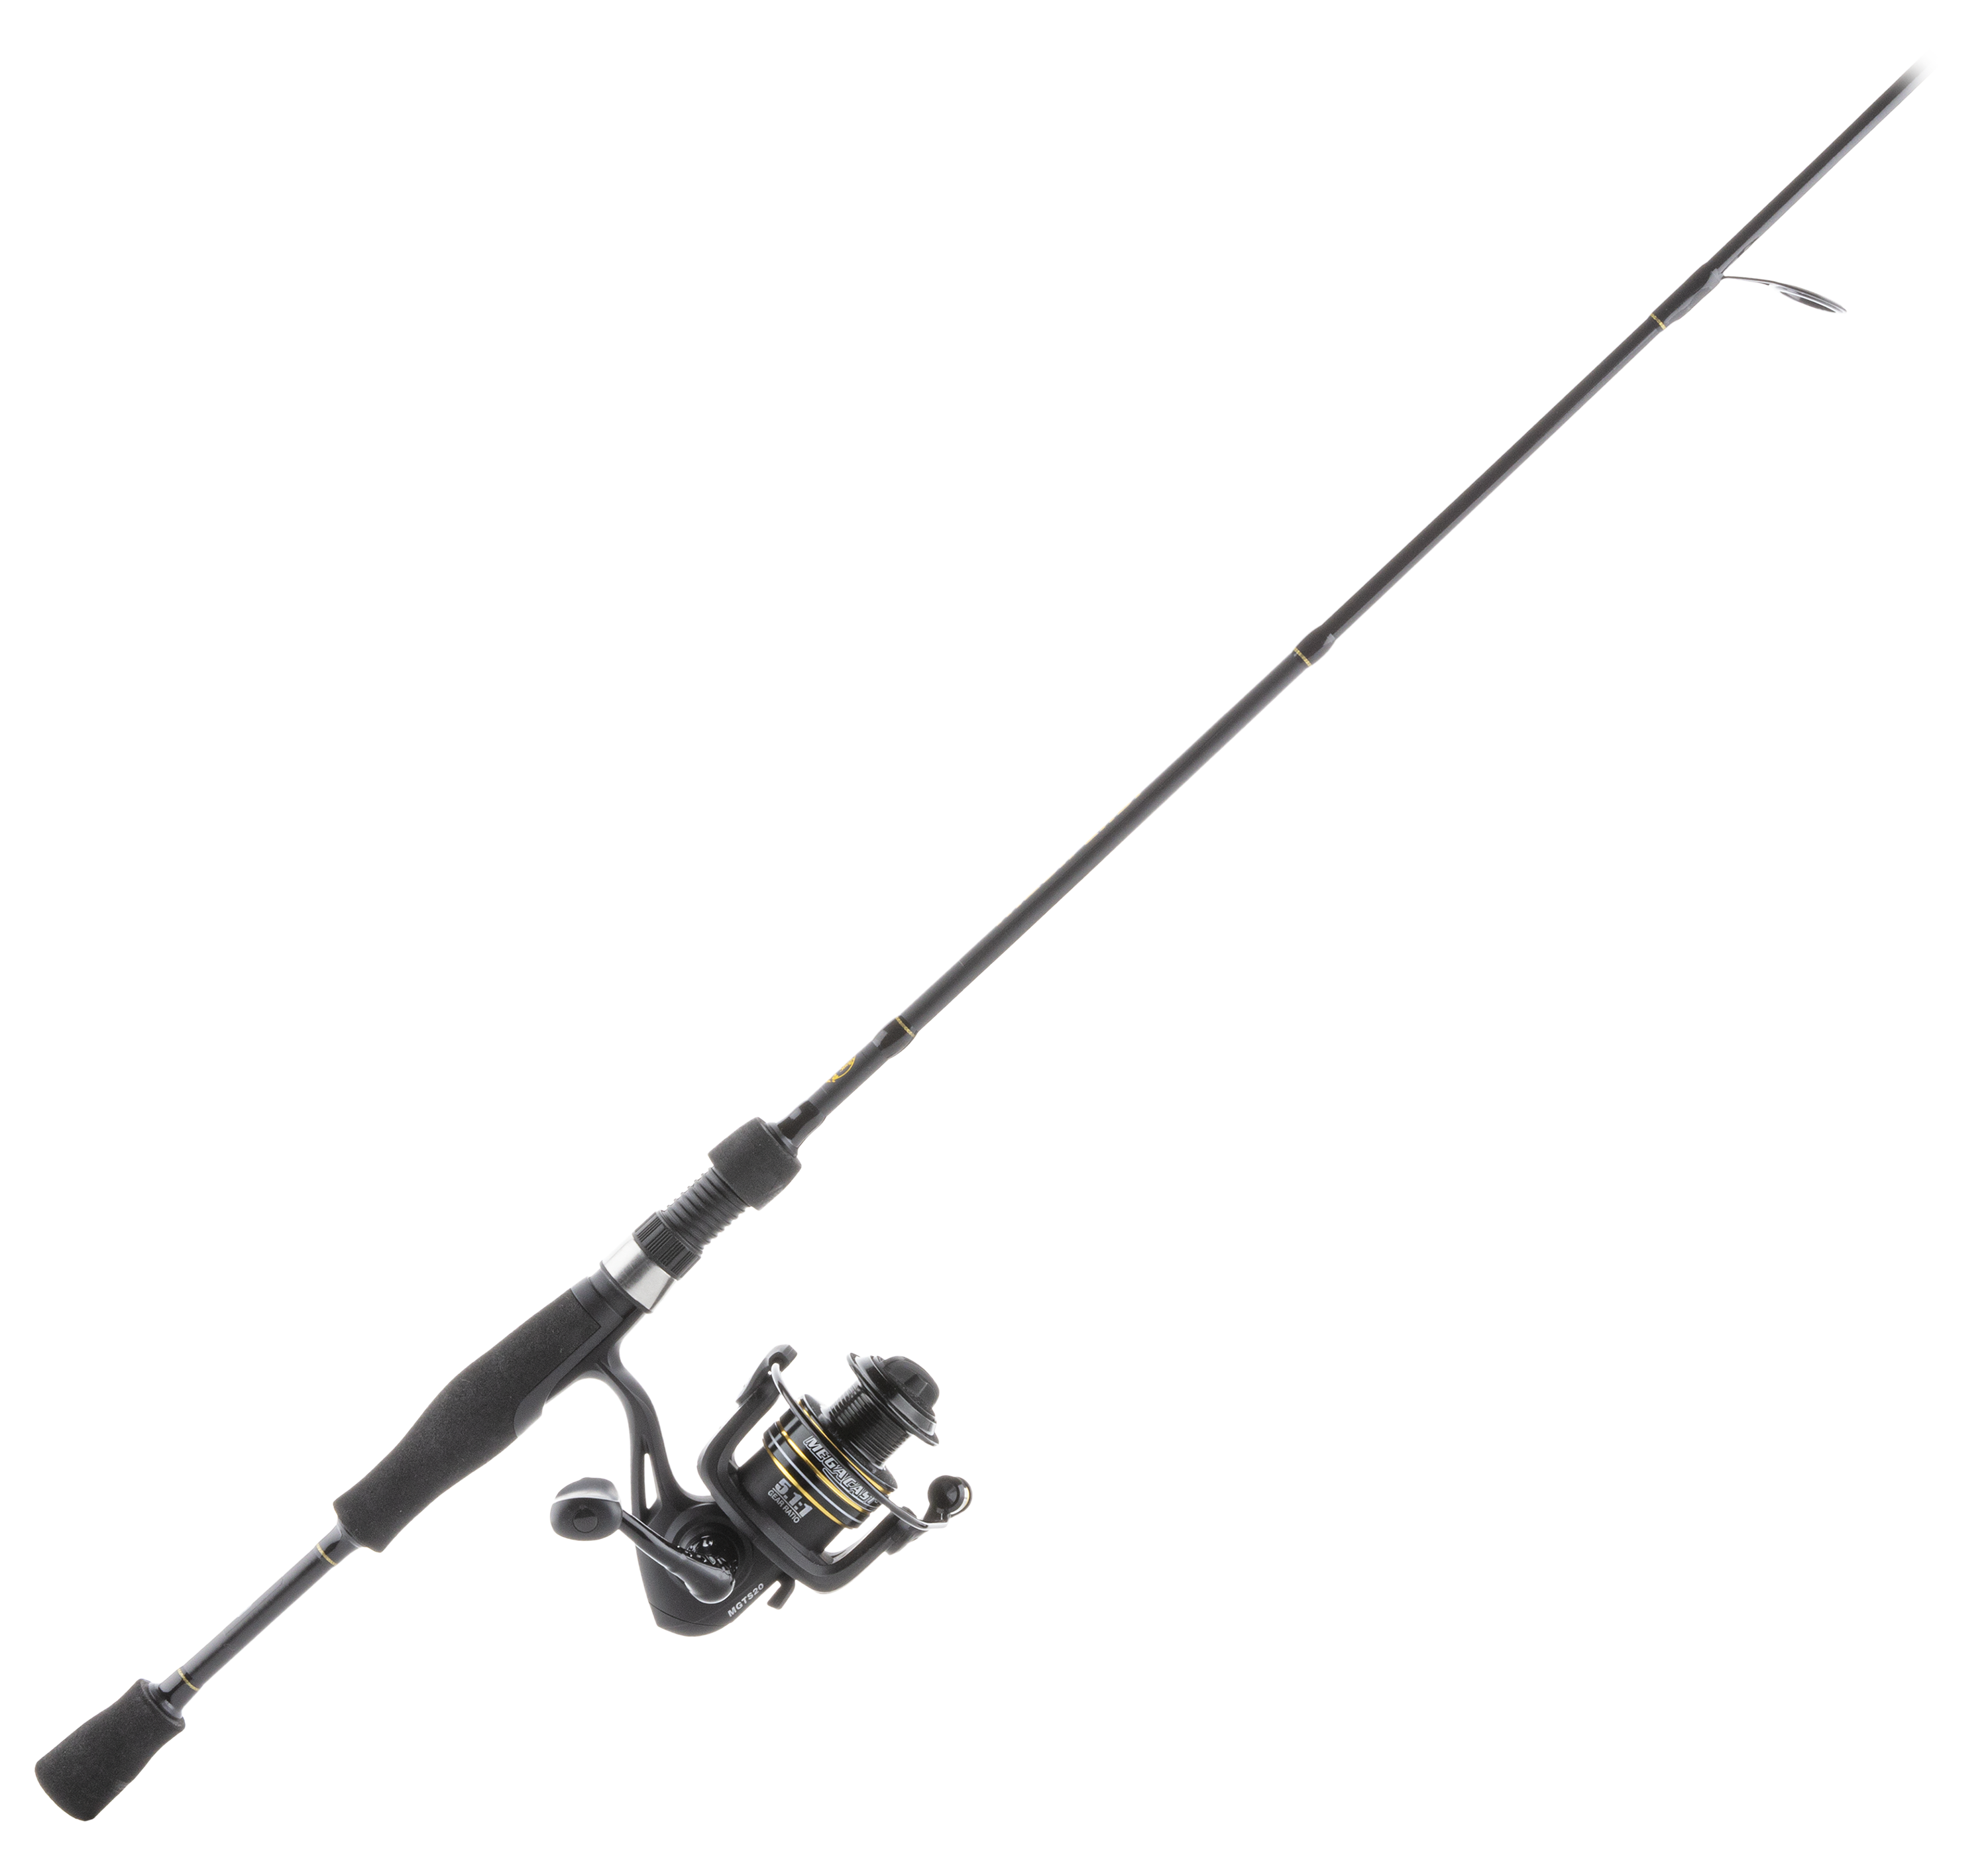 Cabela's Whuppin' Stick Casting Rod, Freshwater Fishing